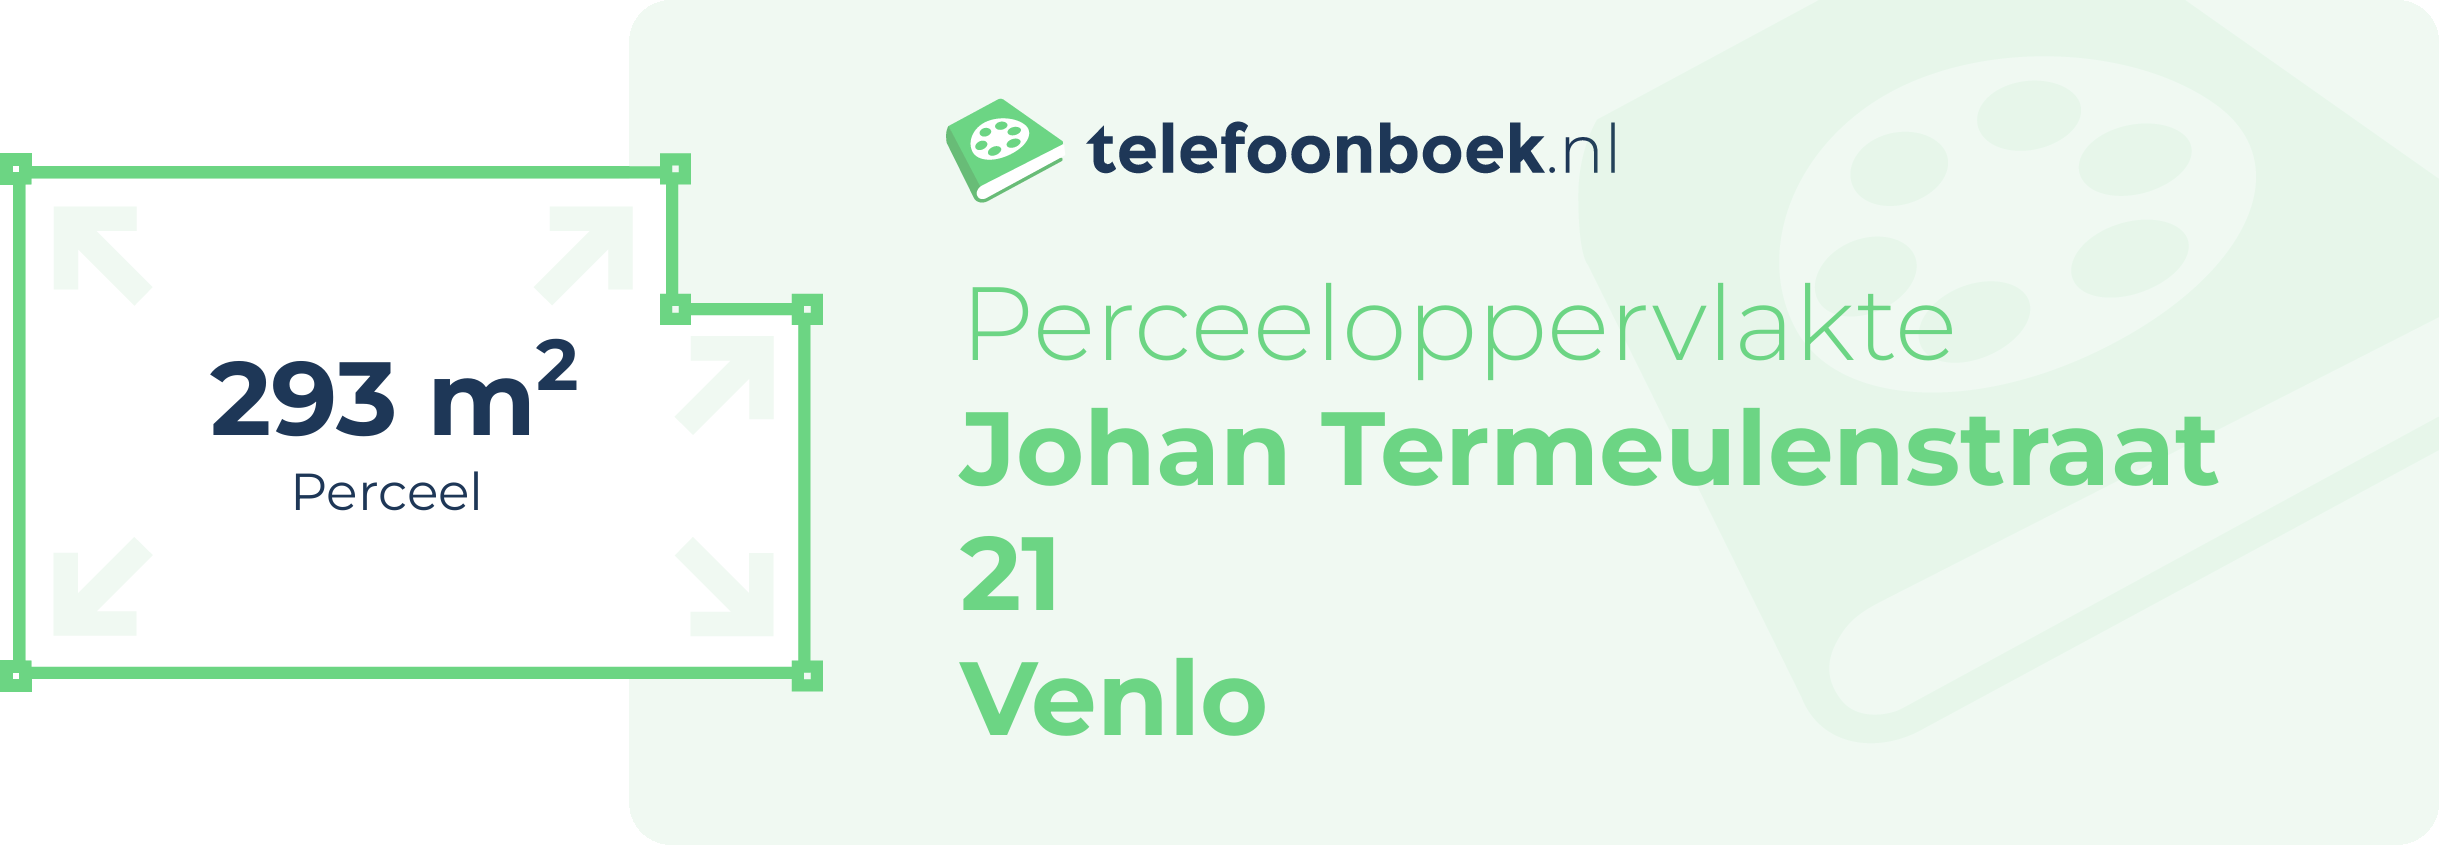 Perceeloppervlakte Johan Termeulenstraat 21 Venlo